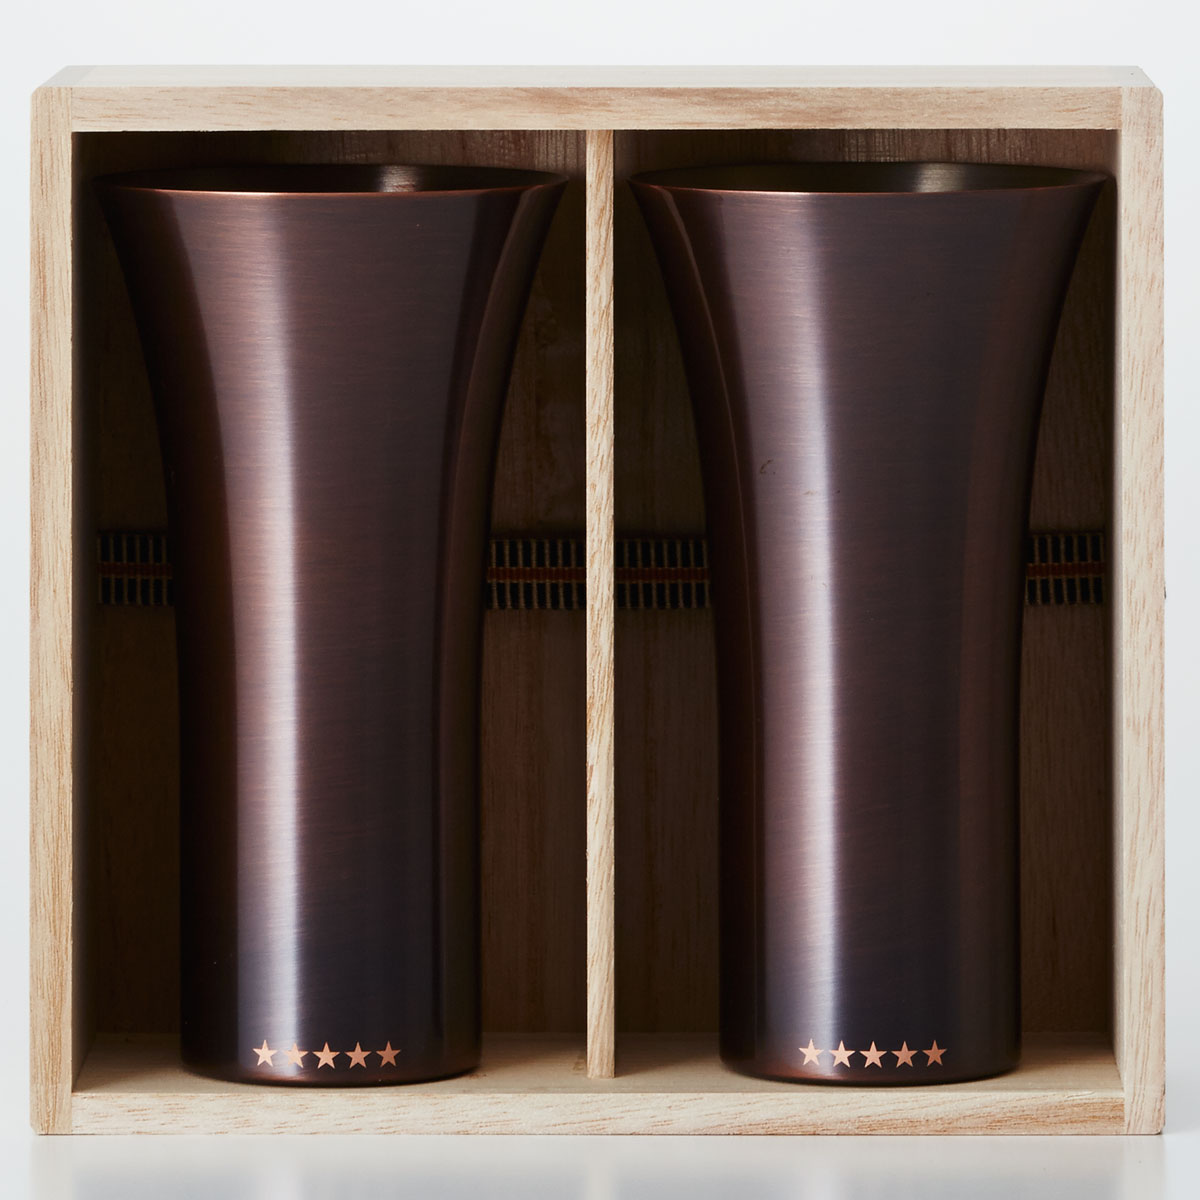 タンブラー WDH 純銅製タンブラー 380ml 2個セット 銅製品 ダブリューディーエイチ ビールグラス ブラウン